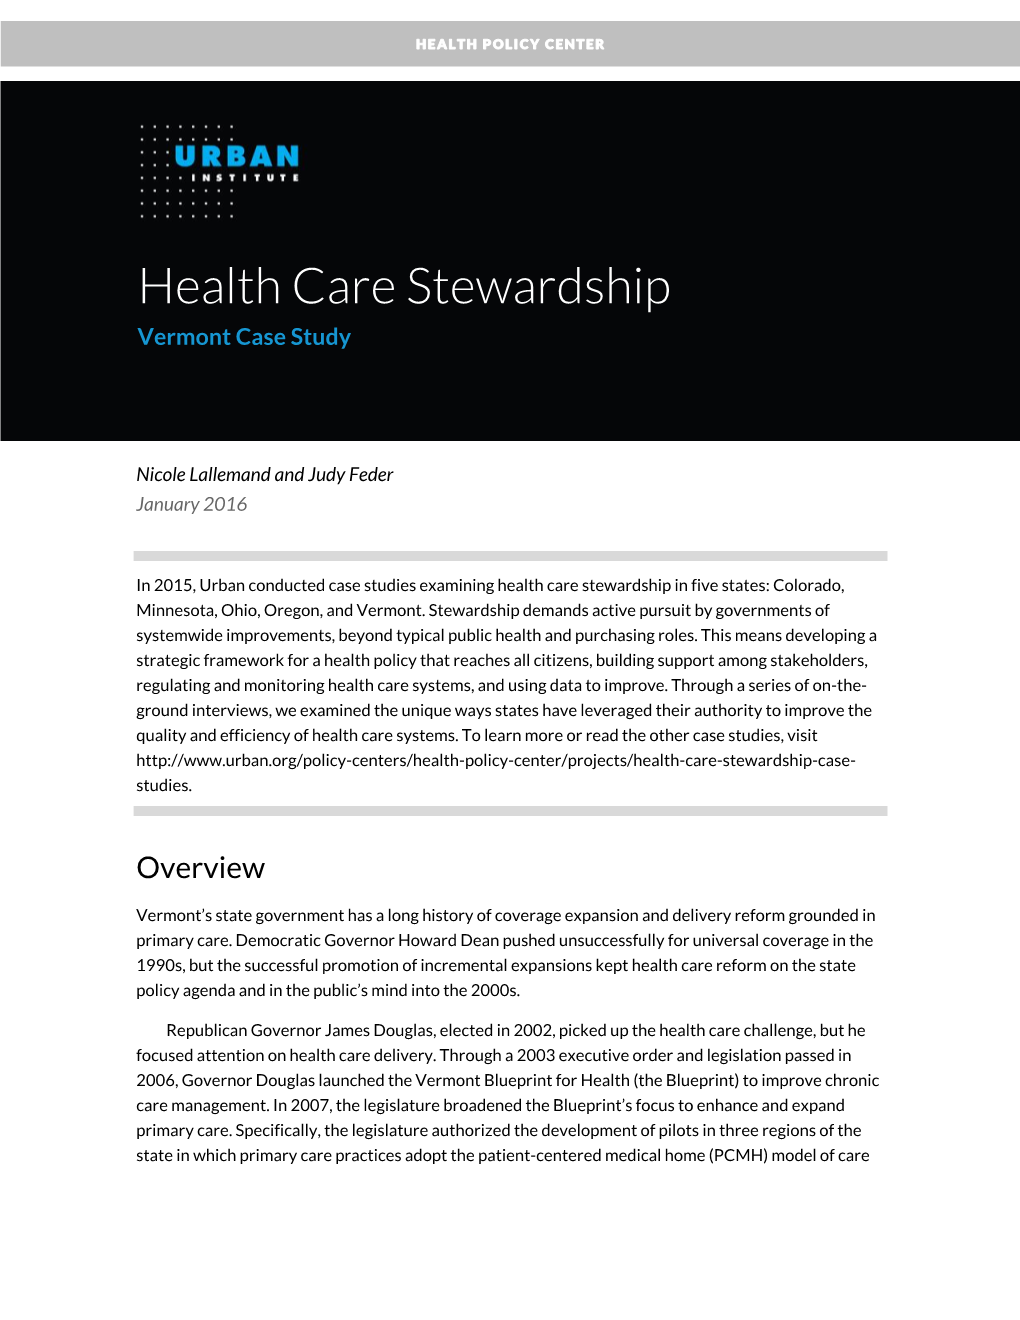 Health Care Stewardship: Vermont Case Study